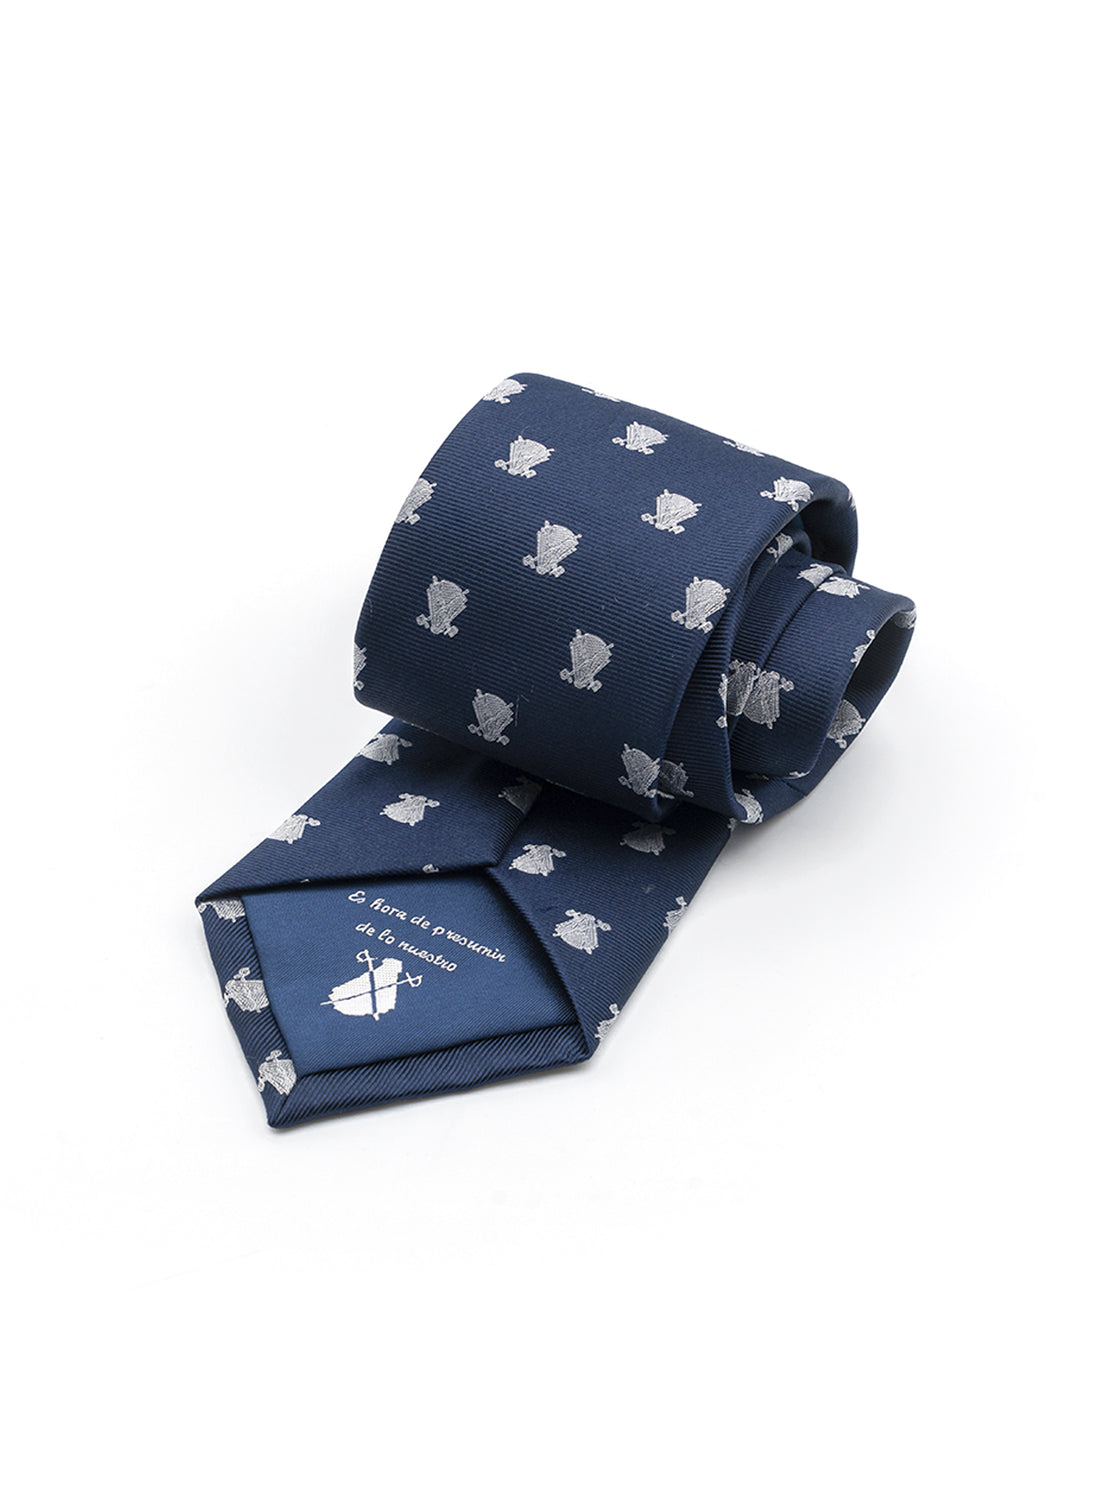 Cravate Bleu Marine Logos Blancs